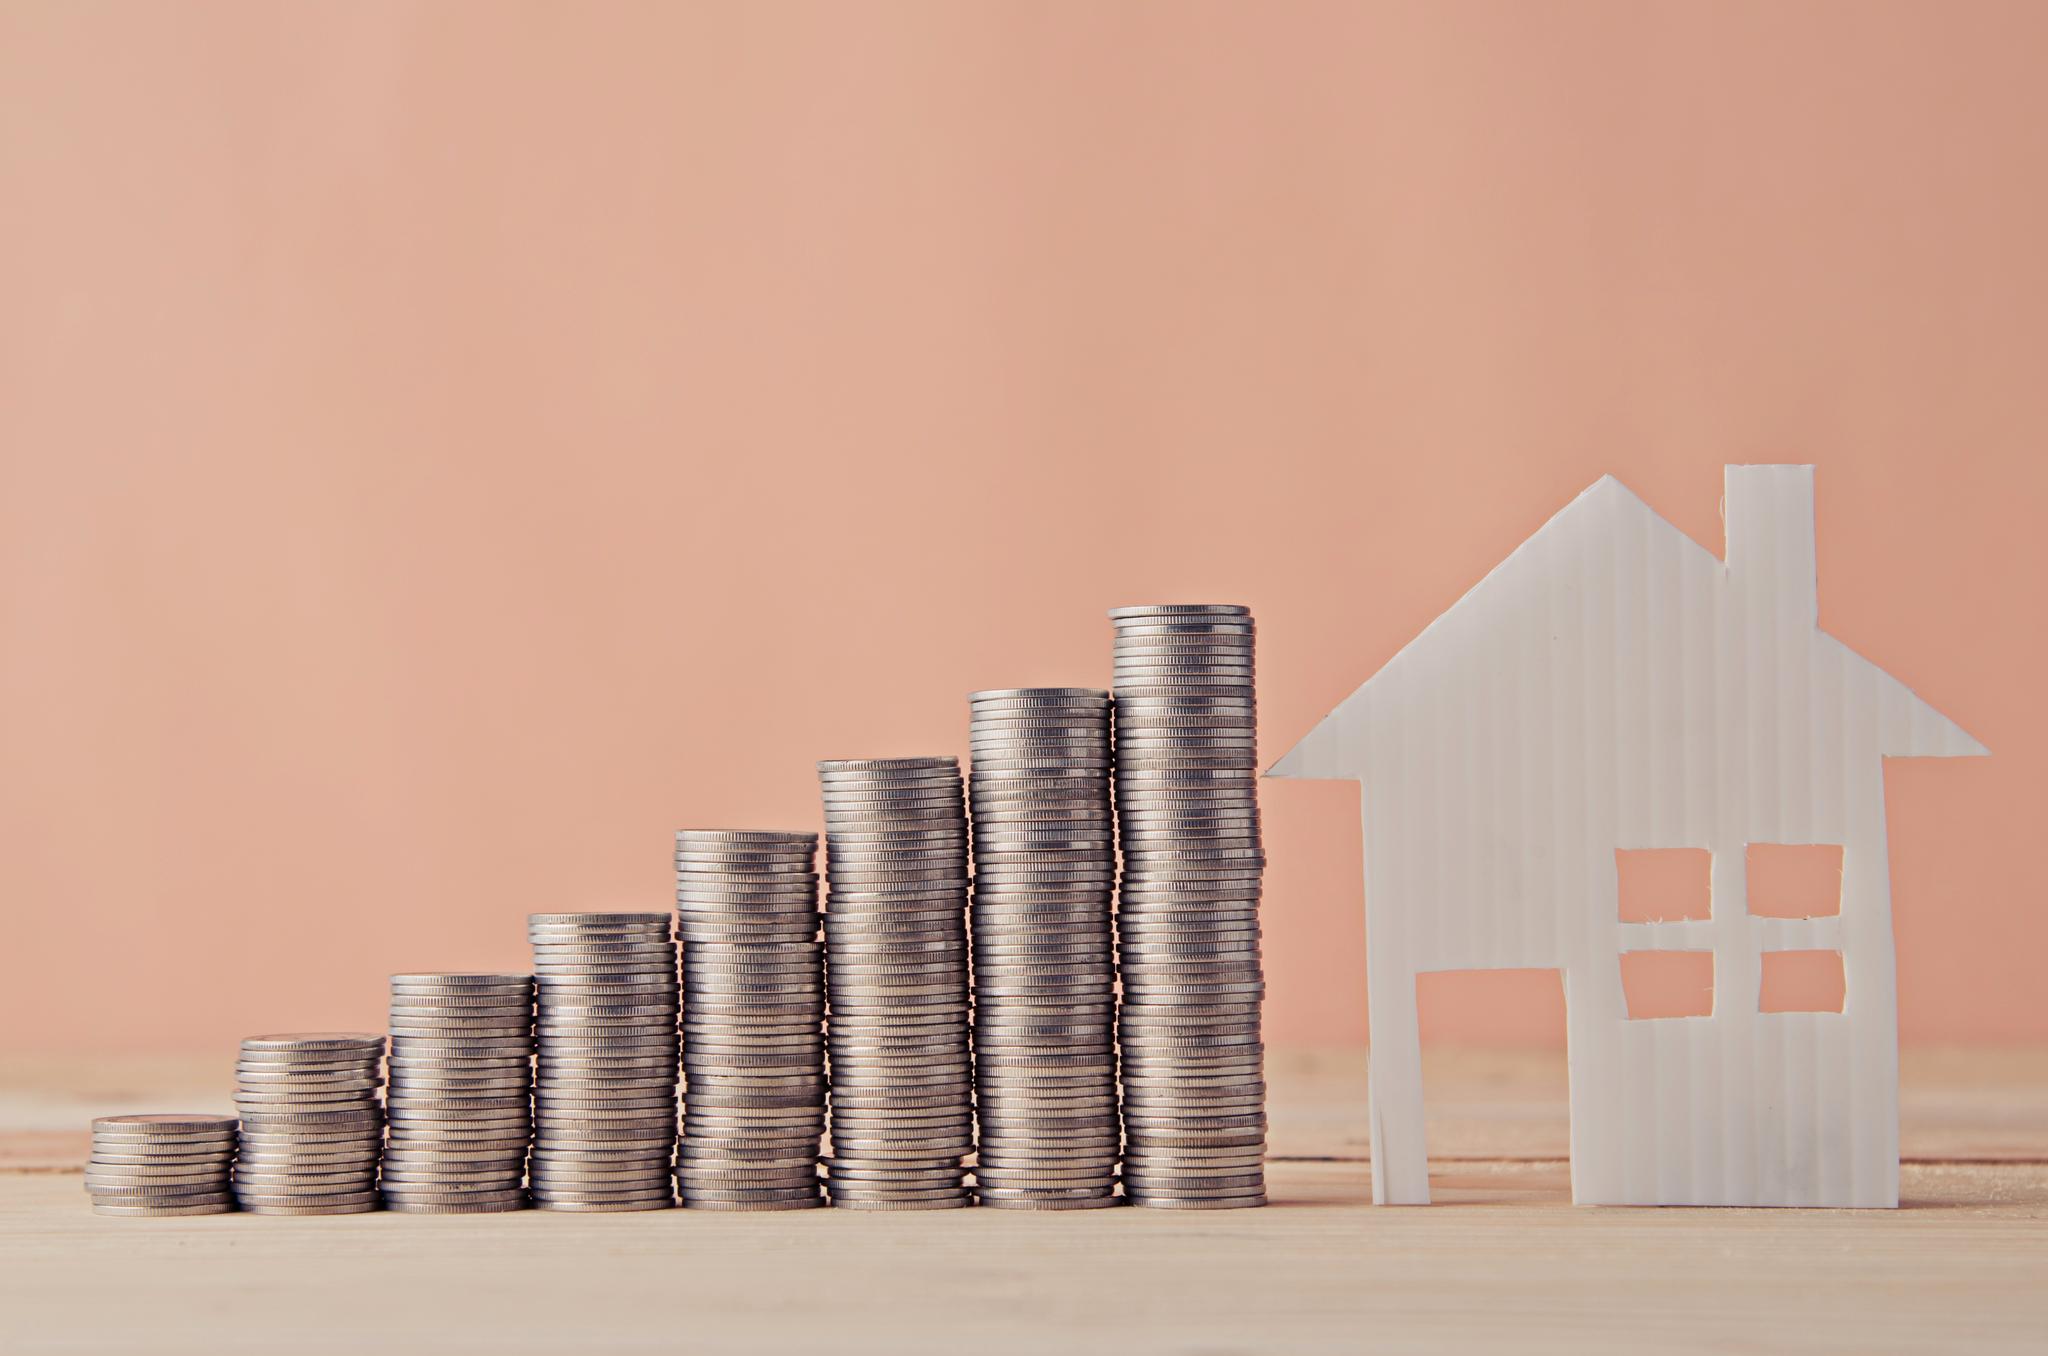 Familier som eier og bor i identiske boliger kan ha betalt veldig ulike priser for dem. Det svgjør deres boligkarriere fremover, skriver artikkelforfatteren.